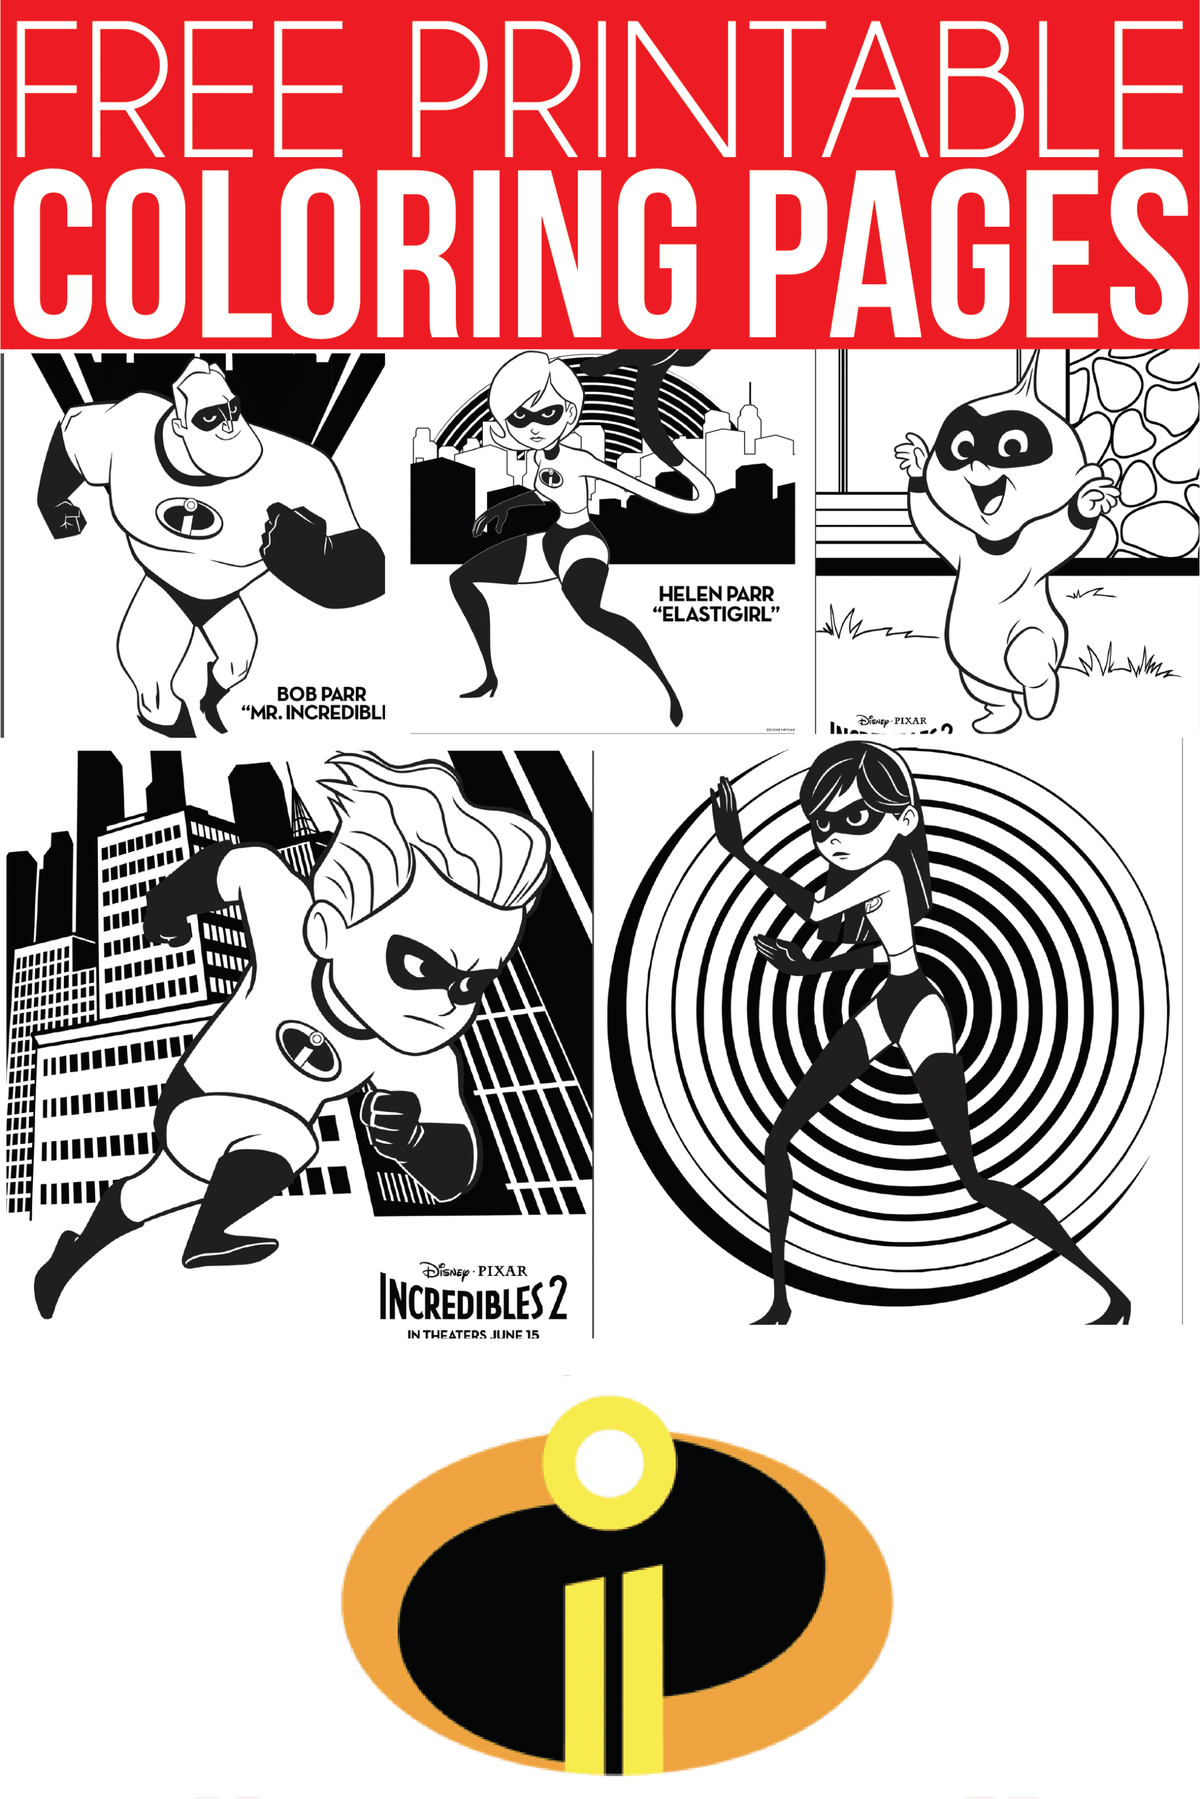 Incredibles 2 रंग पेज, गतिविधि पत्रक, और डिज्नी प्रेमियों के लिए अधिक पारिवारिक मज़ा!